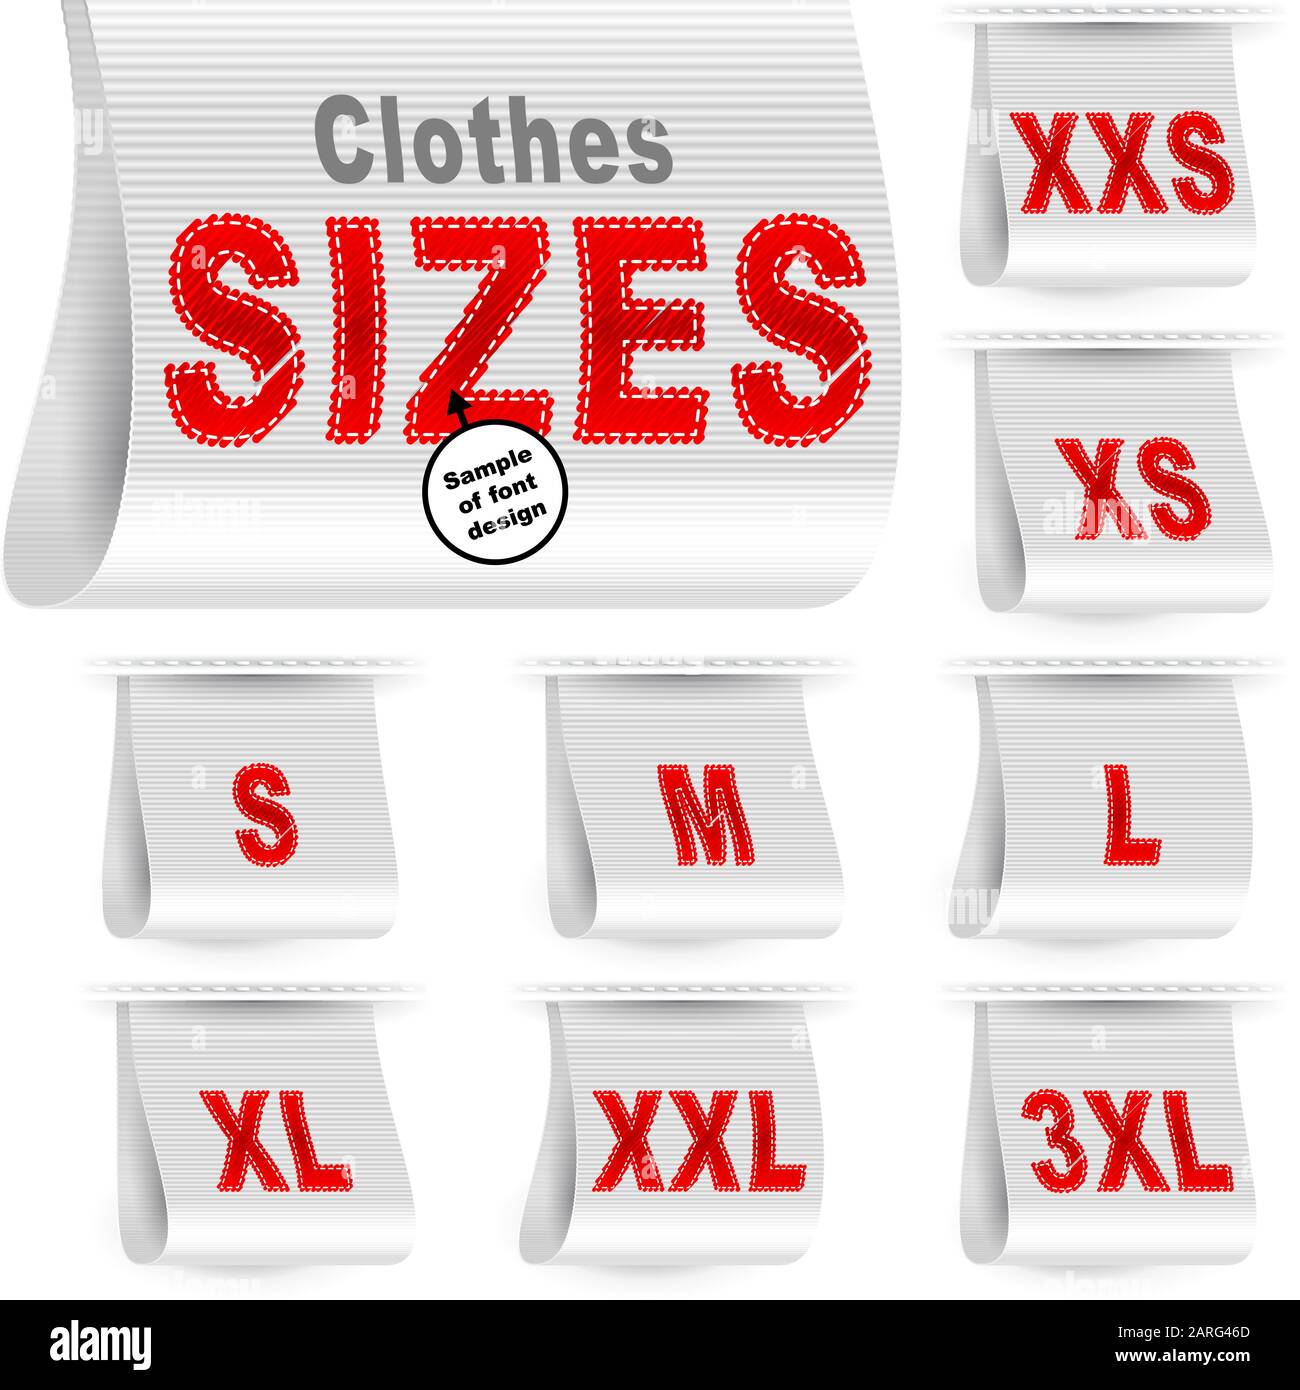 https://c8.alamy.com/comp/2ARG46D/clothes-size-labels-with-standard-designation-symbols-of-garment-dimensions-for-customers-xxs-xs-s-m-l-xl-xxl-xxxl-2ARG46D.jpg